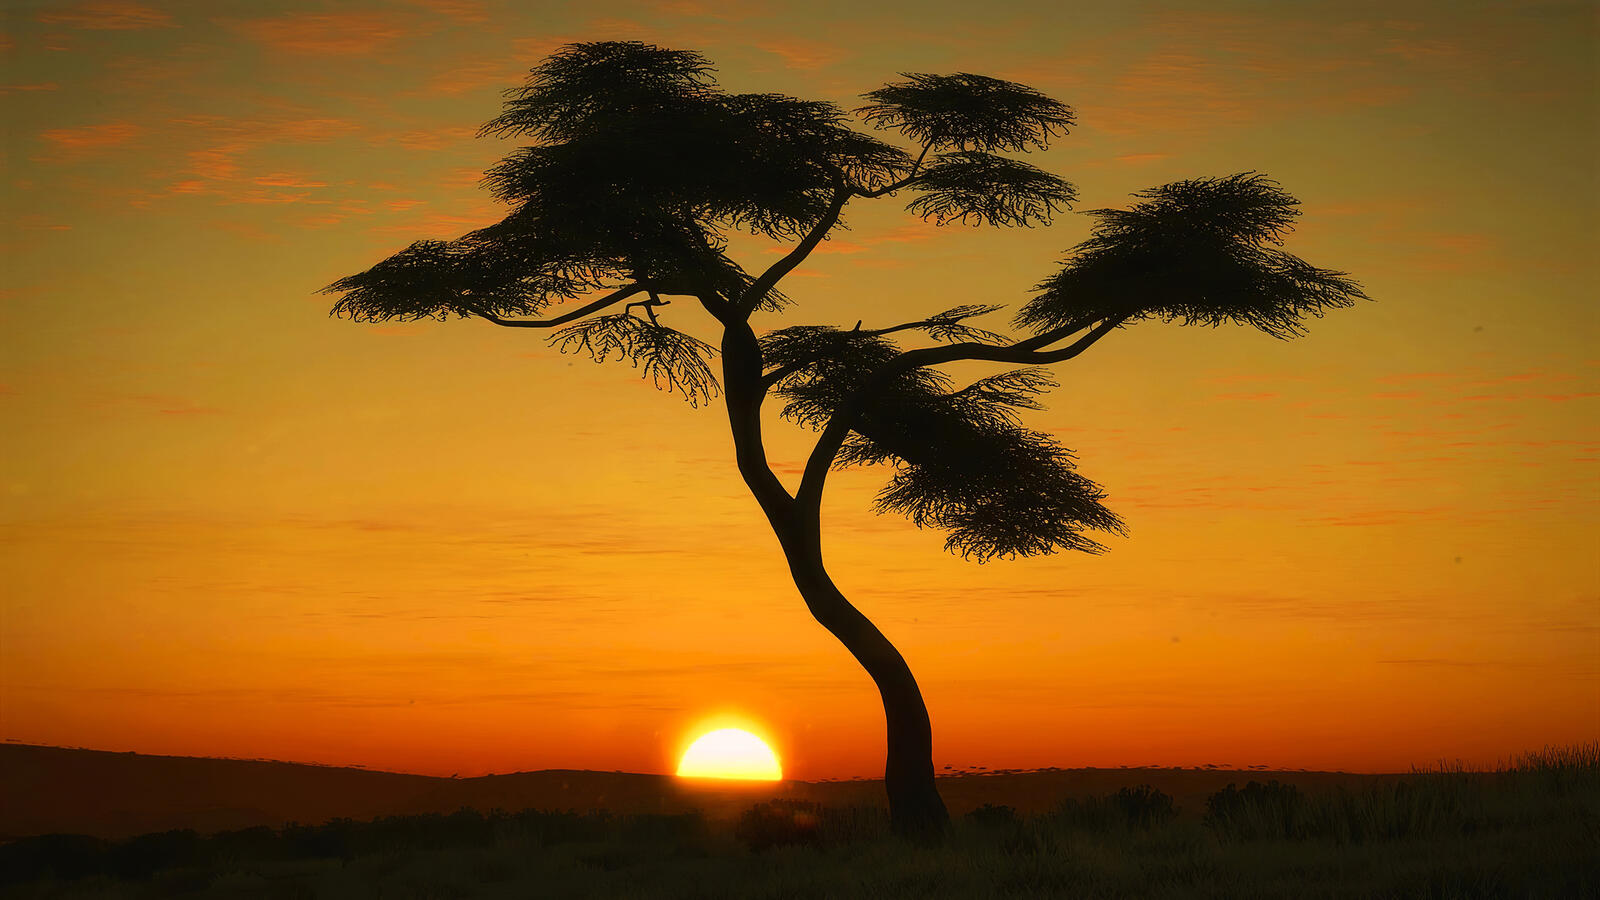 Обои Африка дерево восход солнца на рабочий стол